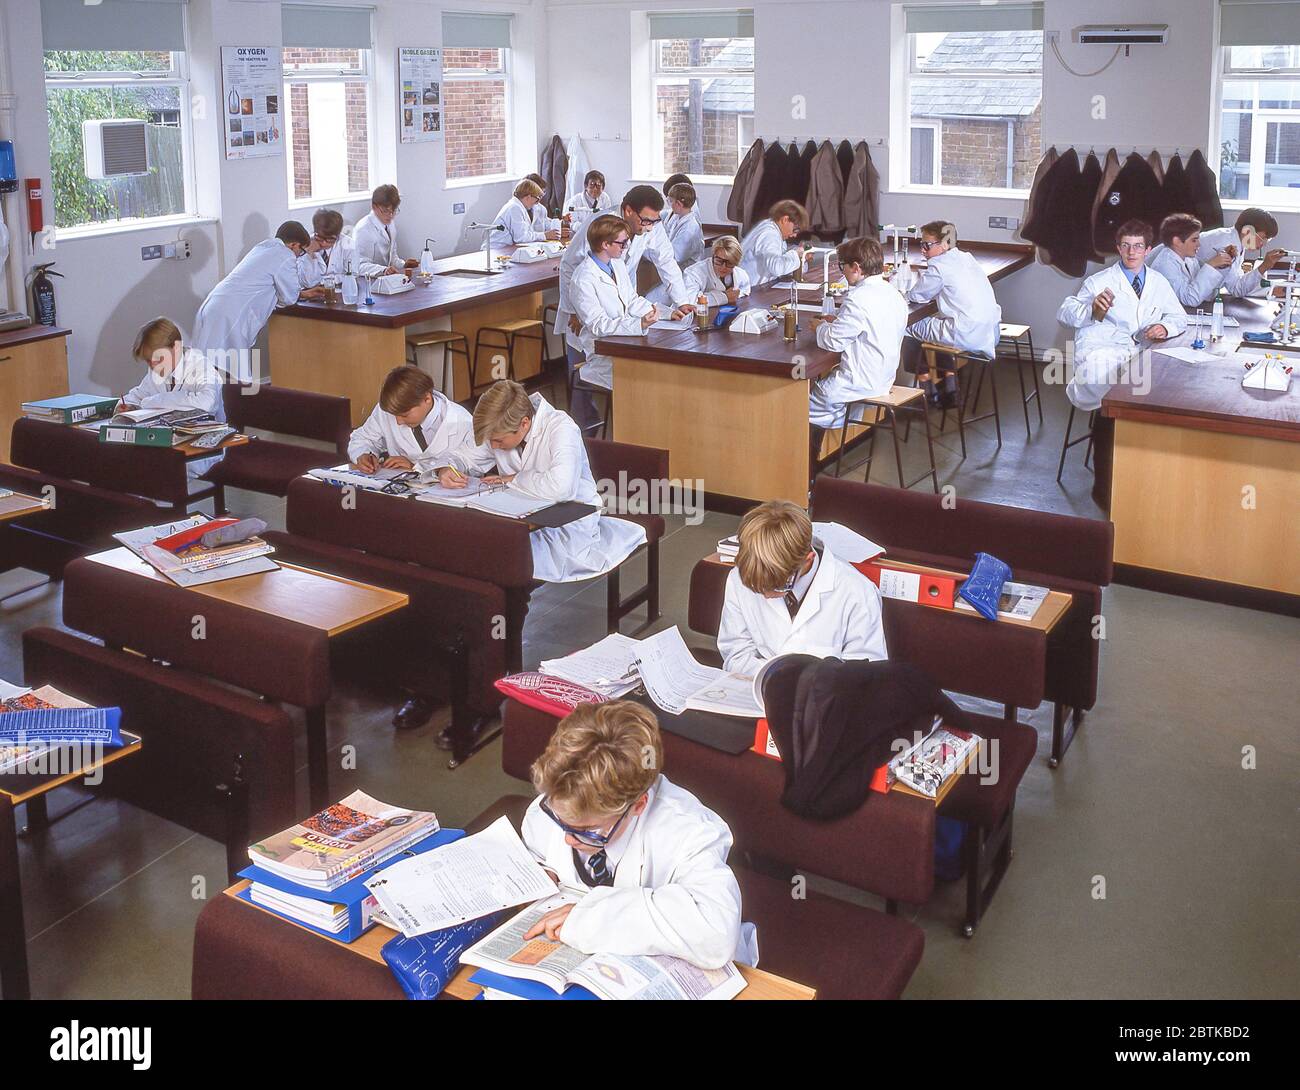 Professeur et étudiants en classe de sciences, Surrey, Angleterre, Royaume-Uni Banque D'Images